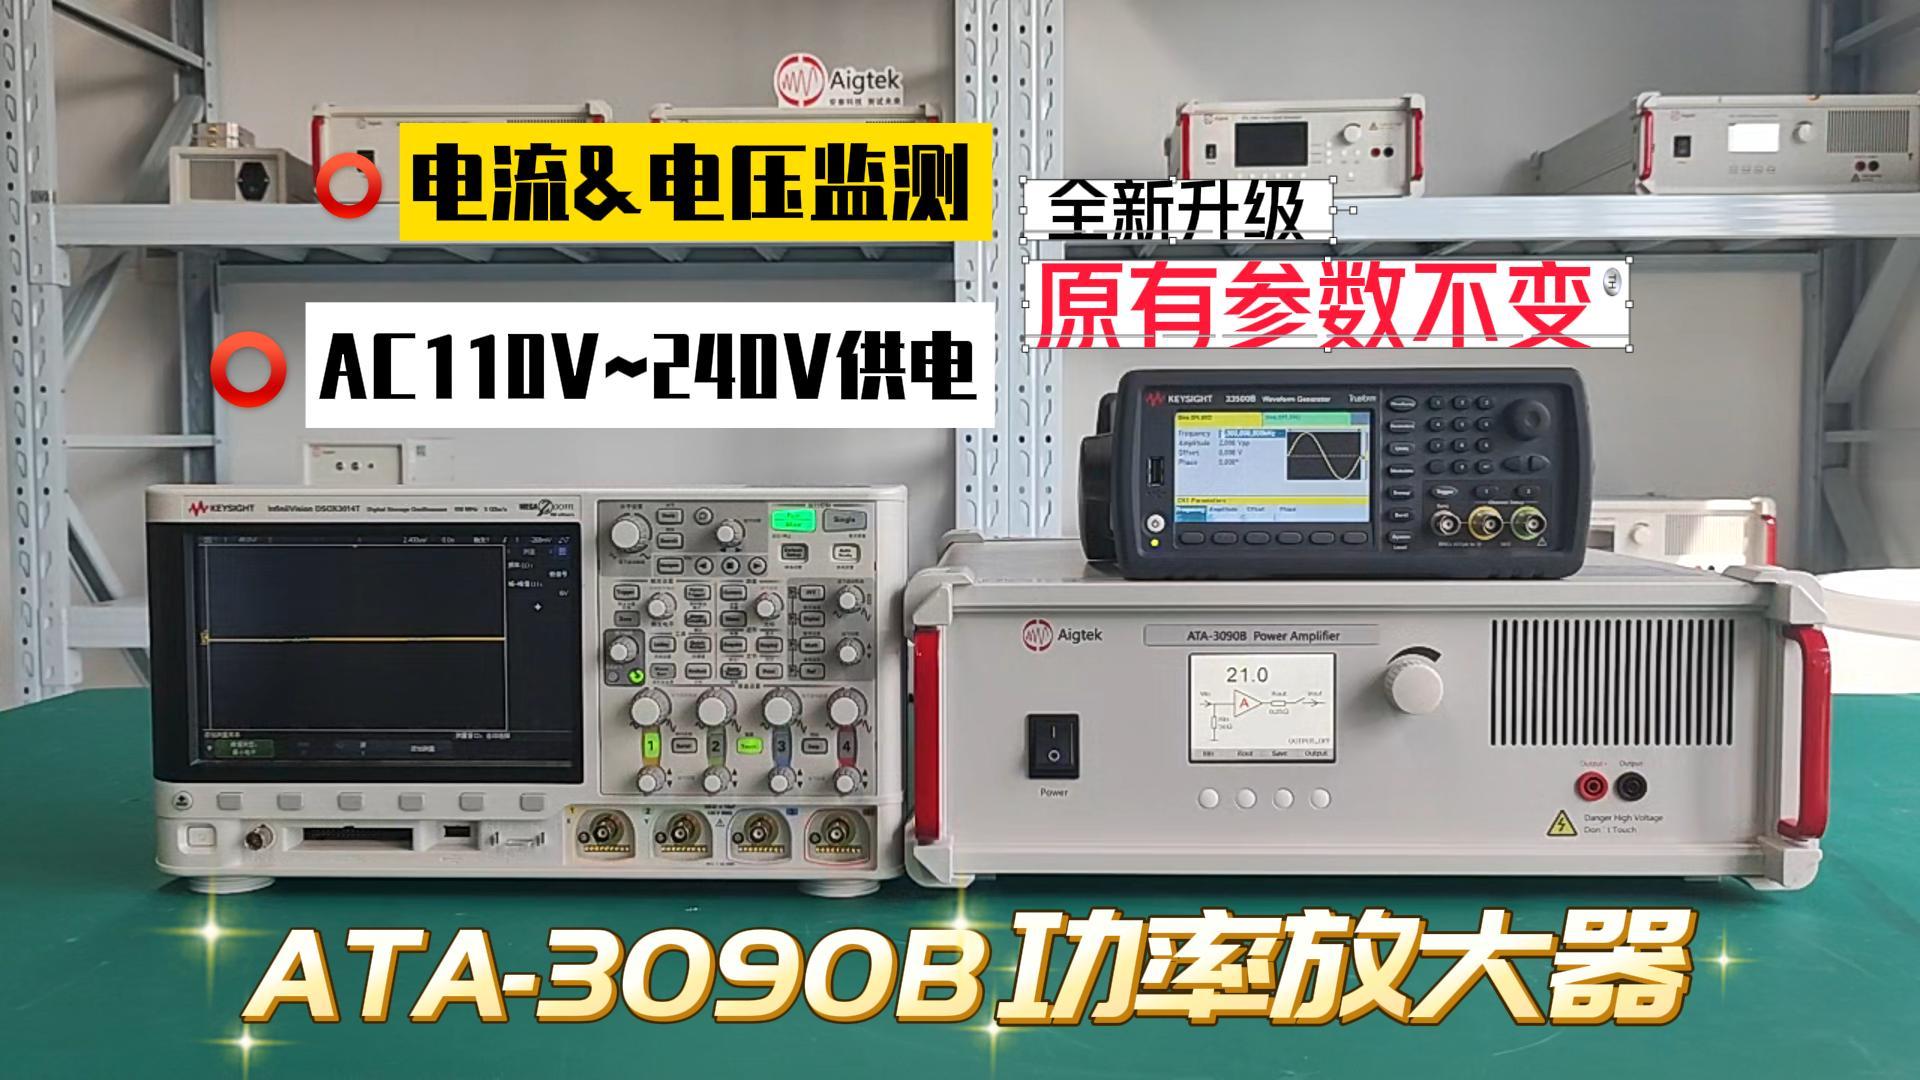 【ATA-3090B功率放大器】产品全新升级！参数不变！功能更全面！测试利器！#功率放大器 #电子制作 